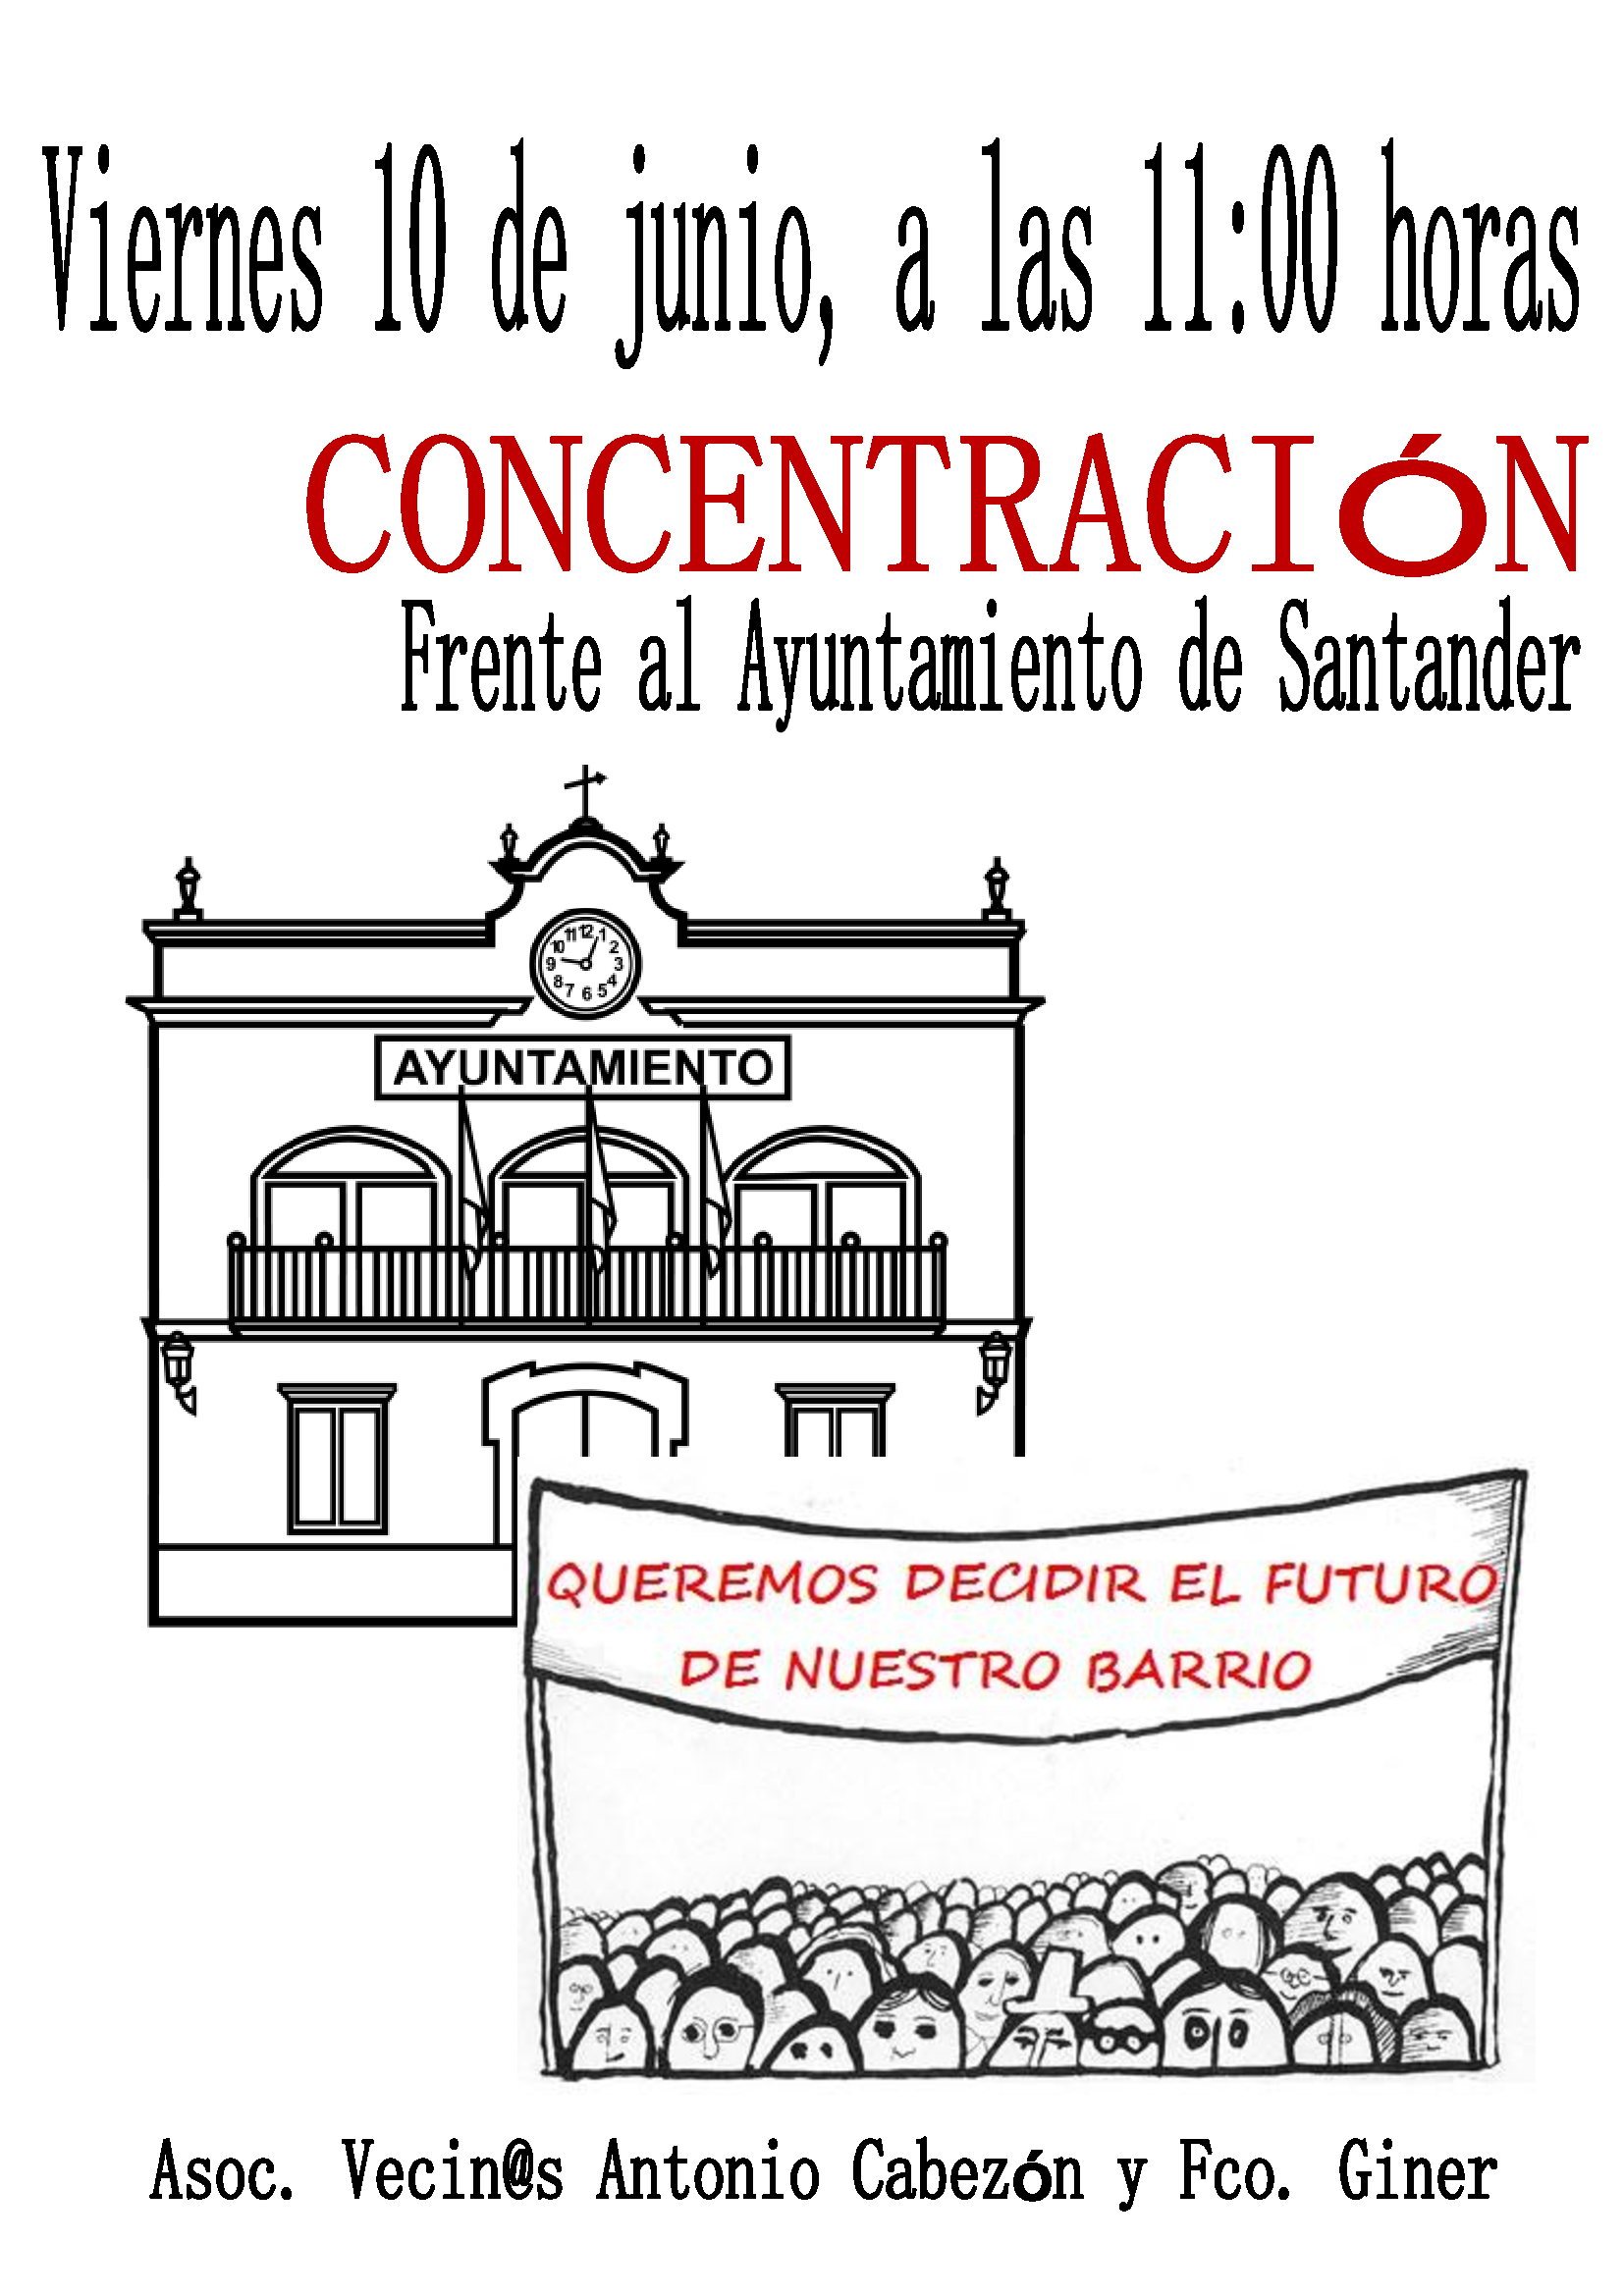 cartel concentracion 10 de junio